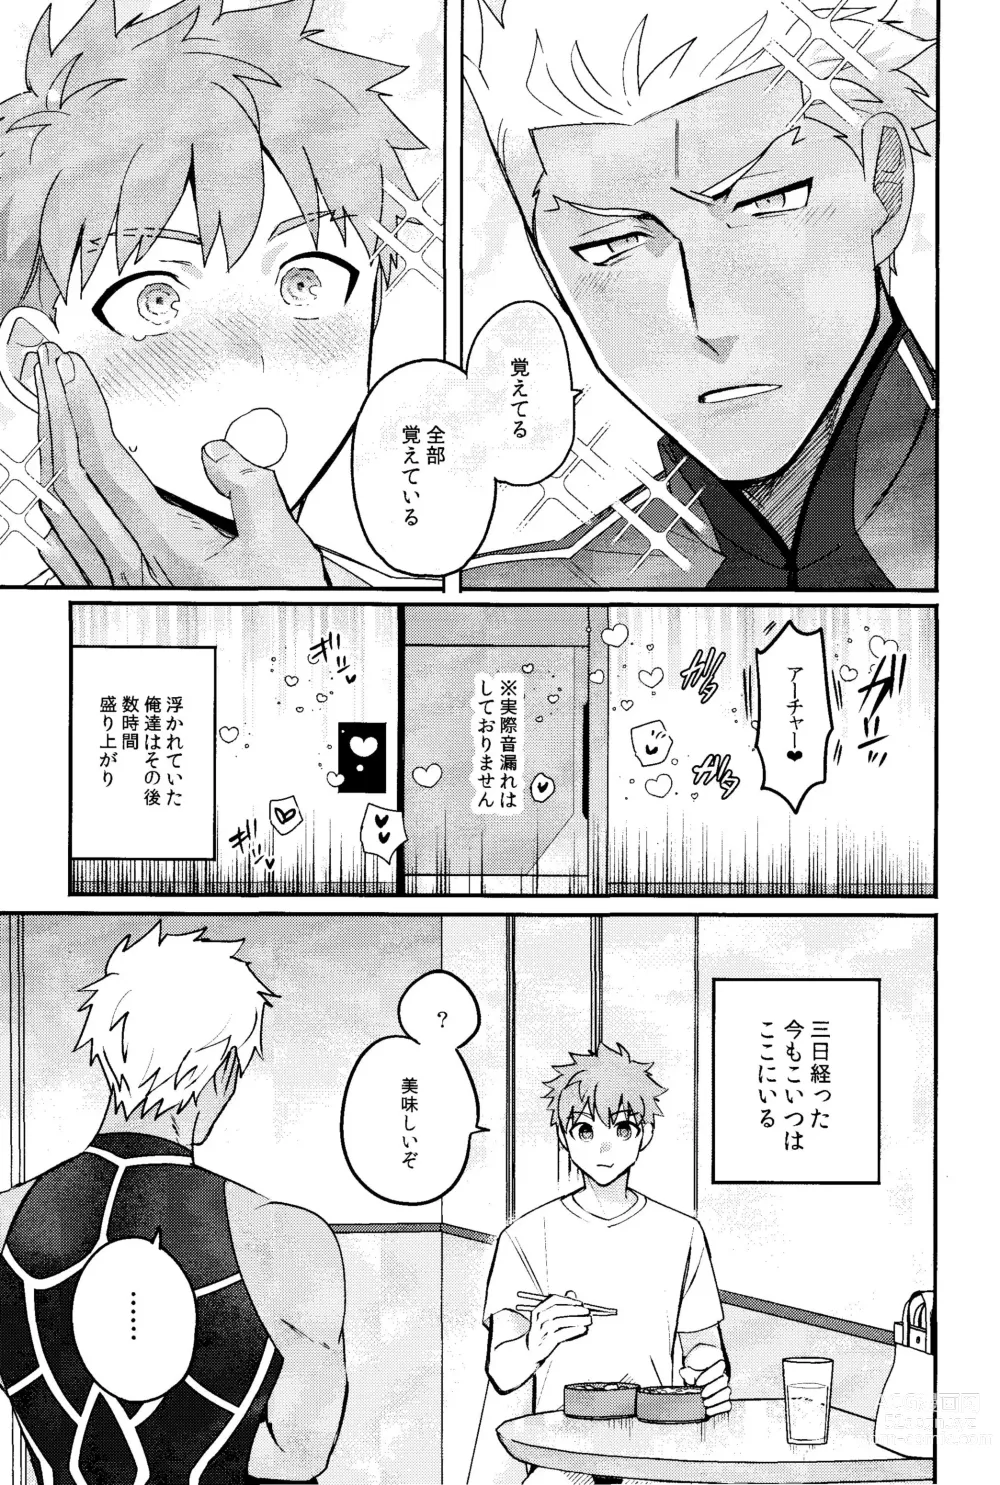 Page 8 of doujinshi Iru